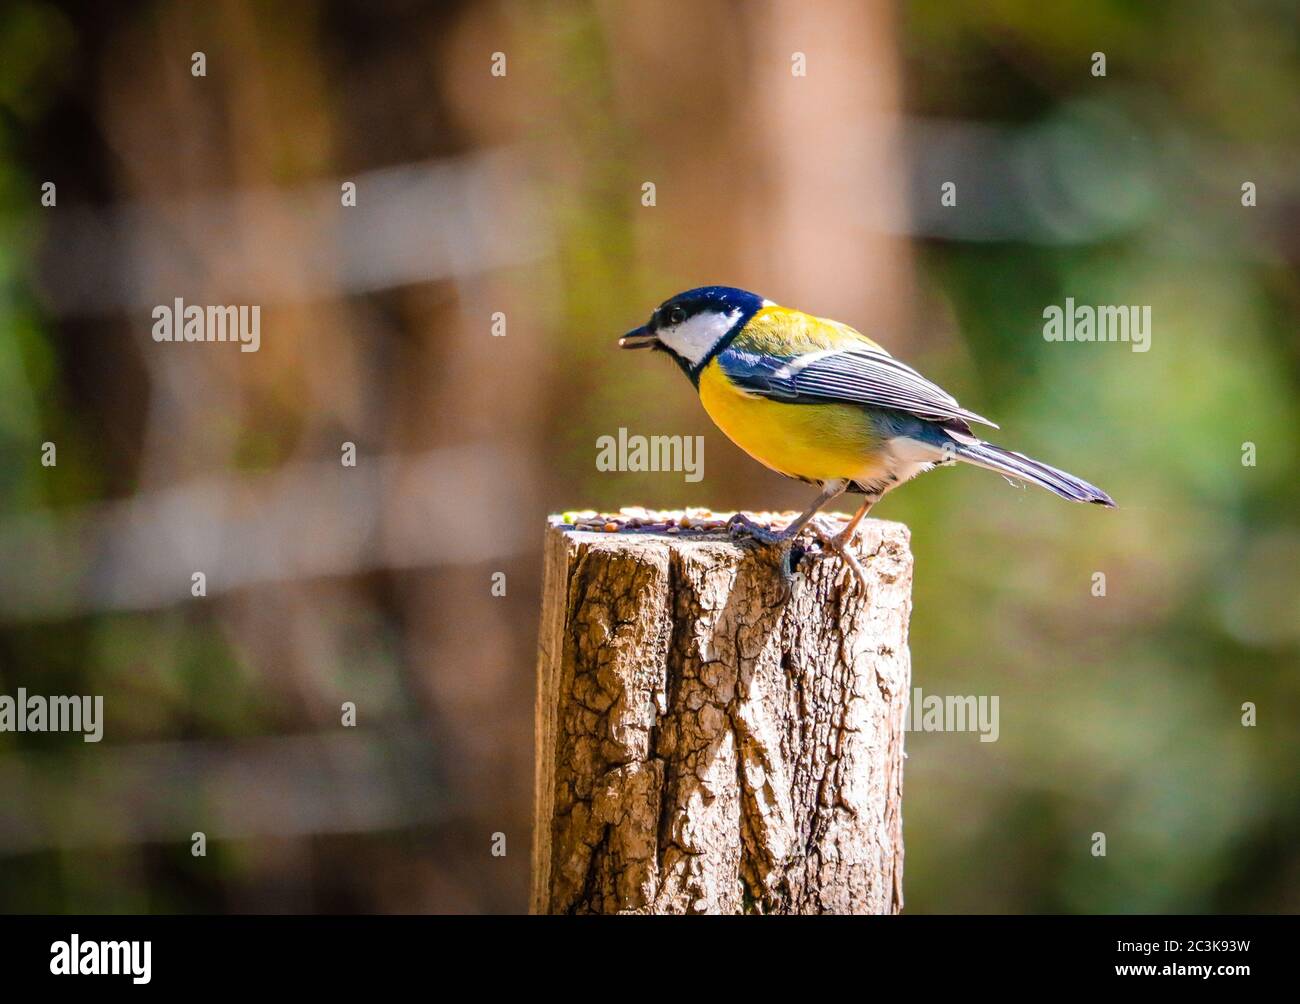 Colpo di closeup di un uccello Flycatcher con voci gialle che perching su moncone isolato su uno sfondo sfocato Foto Stock